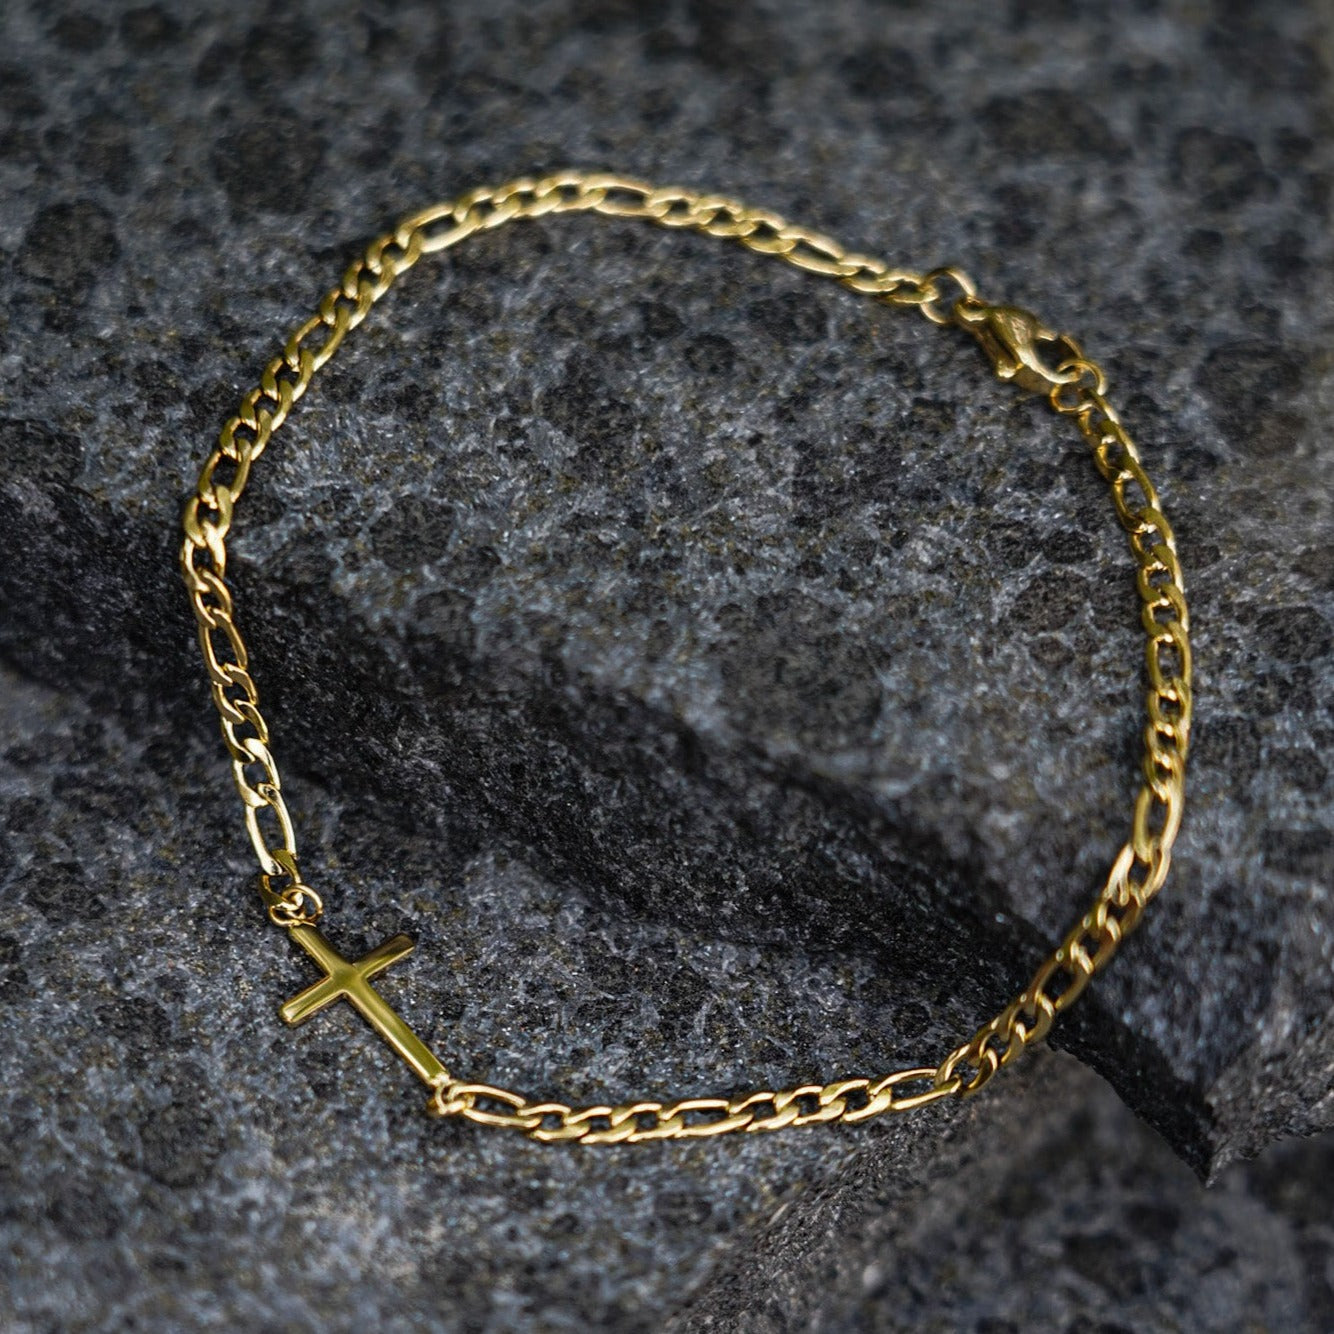 Antique Cross Bracelet - Gold Tone